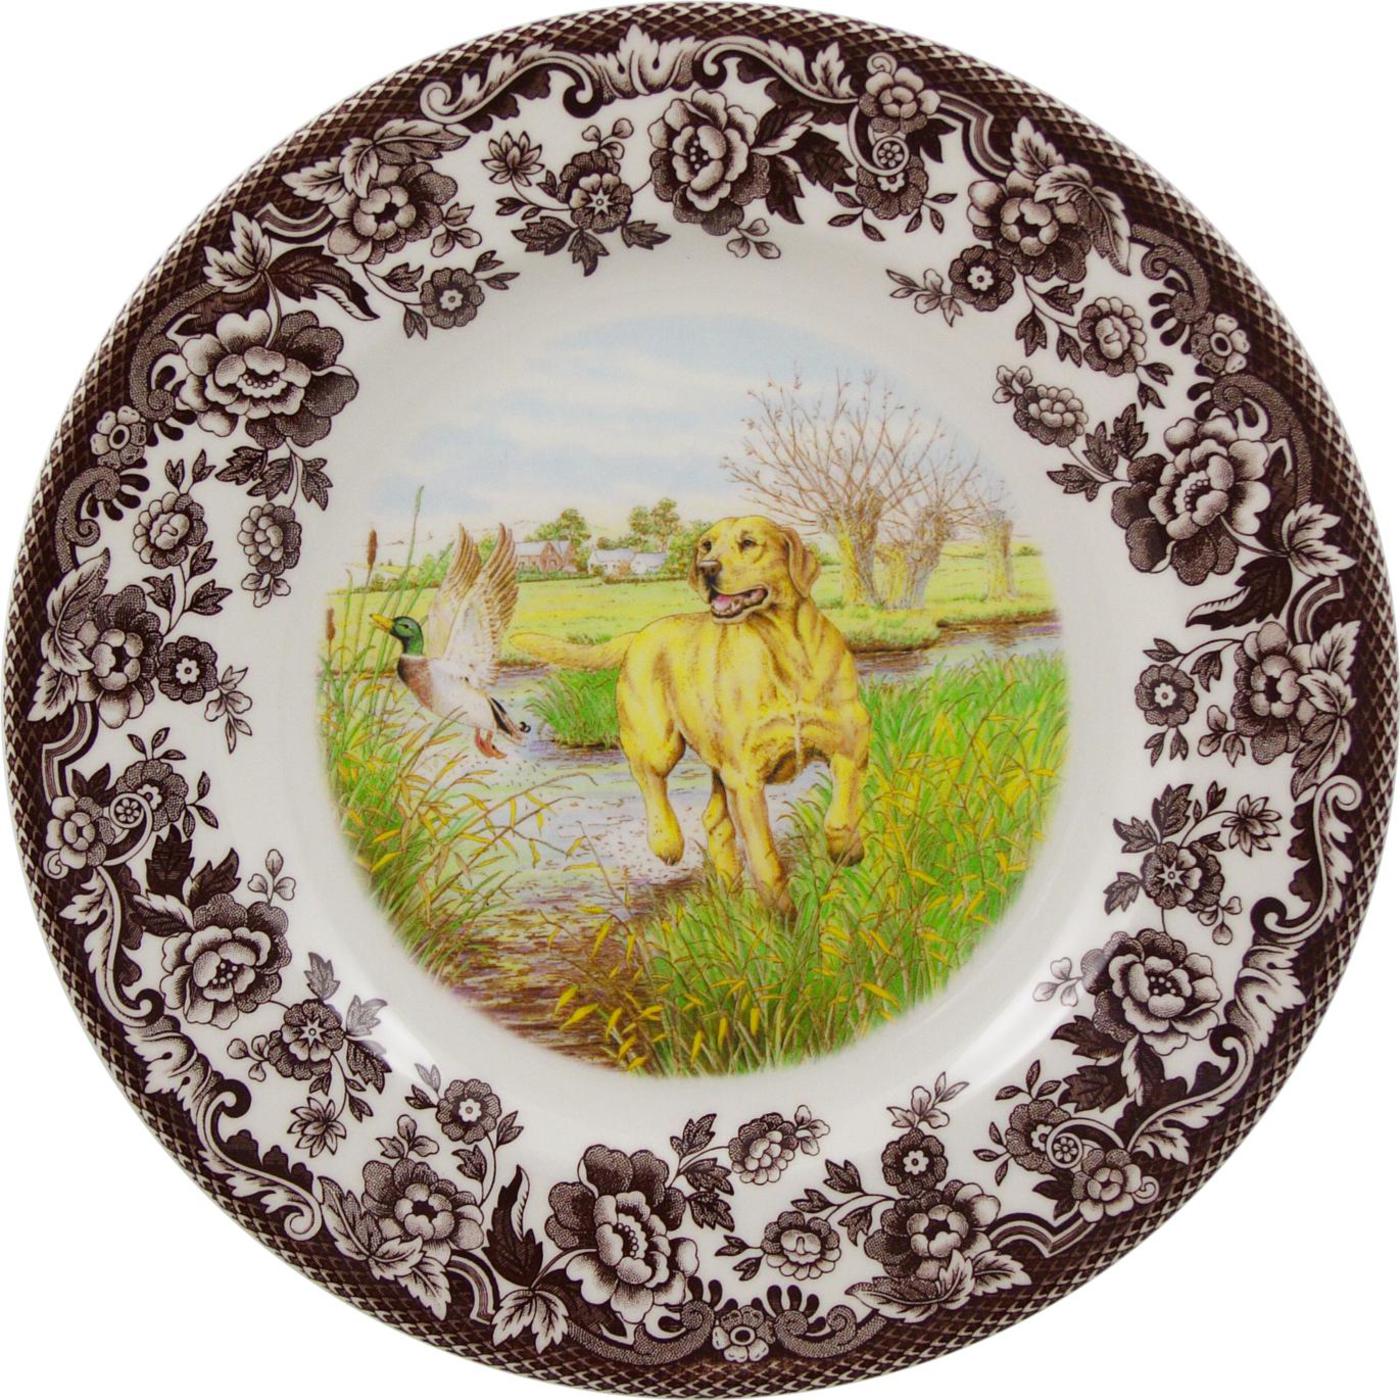 Spode Woodland Salad Plate, Yellow Labrador Retriever